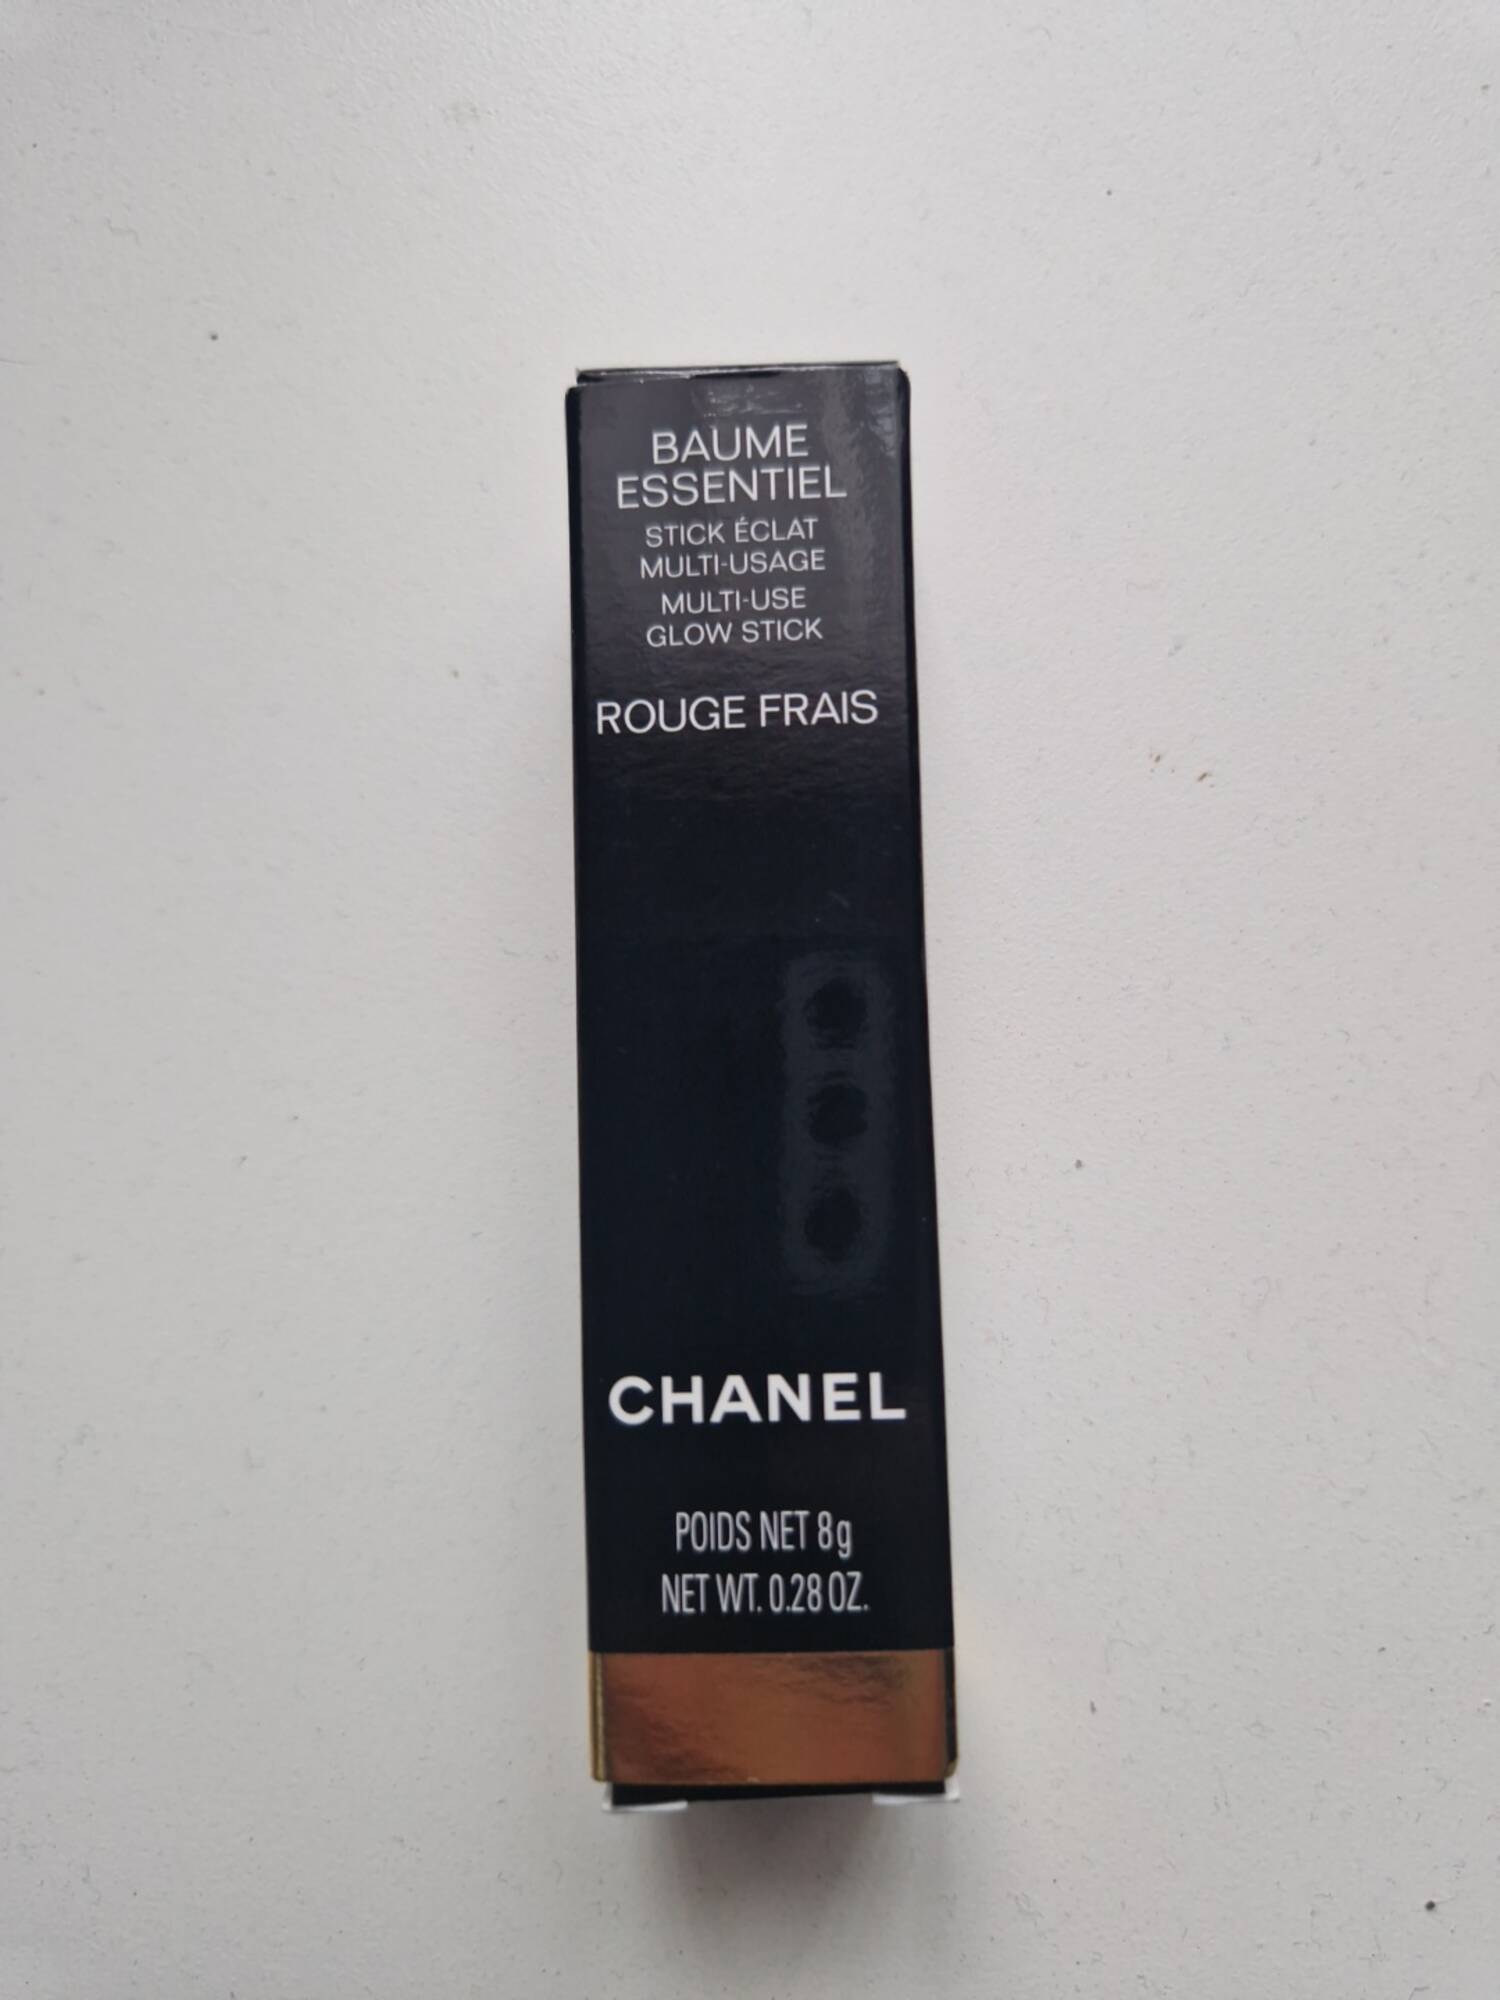 CHANEL - Baume essentiel - Stick éclat rouge frais